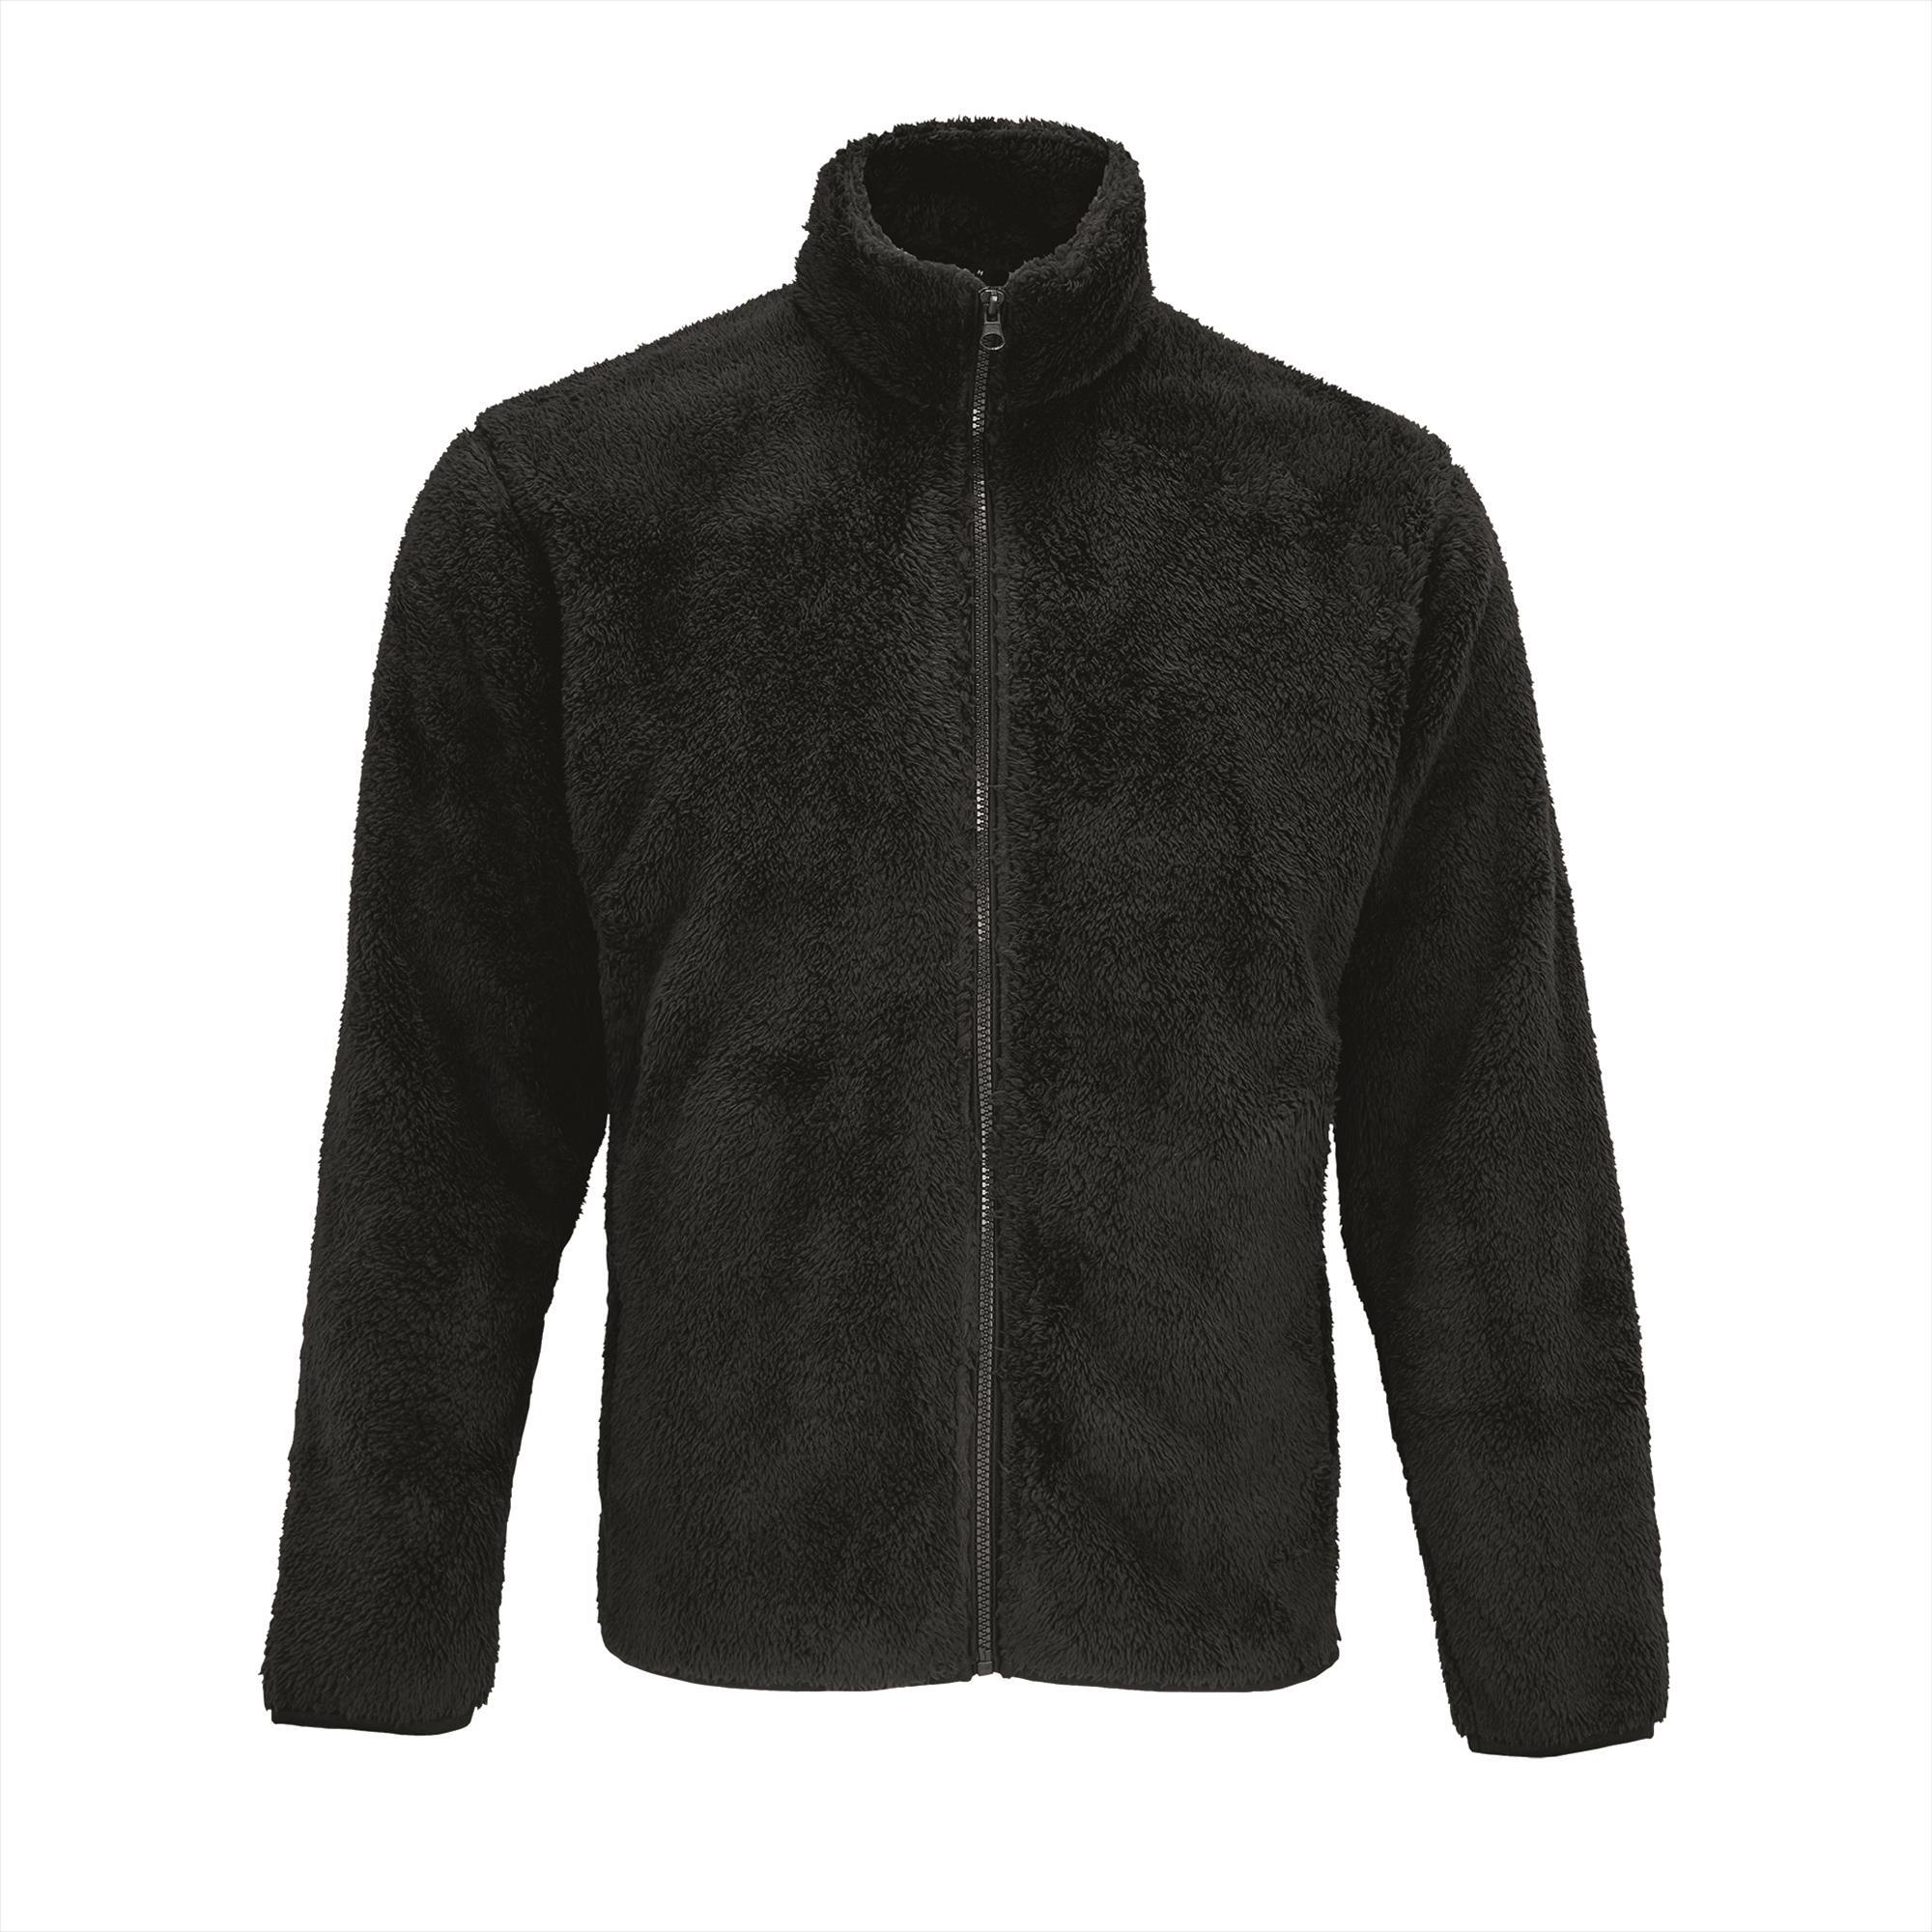 Unisex Fleece Zip Jacket zwart jas